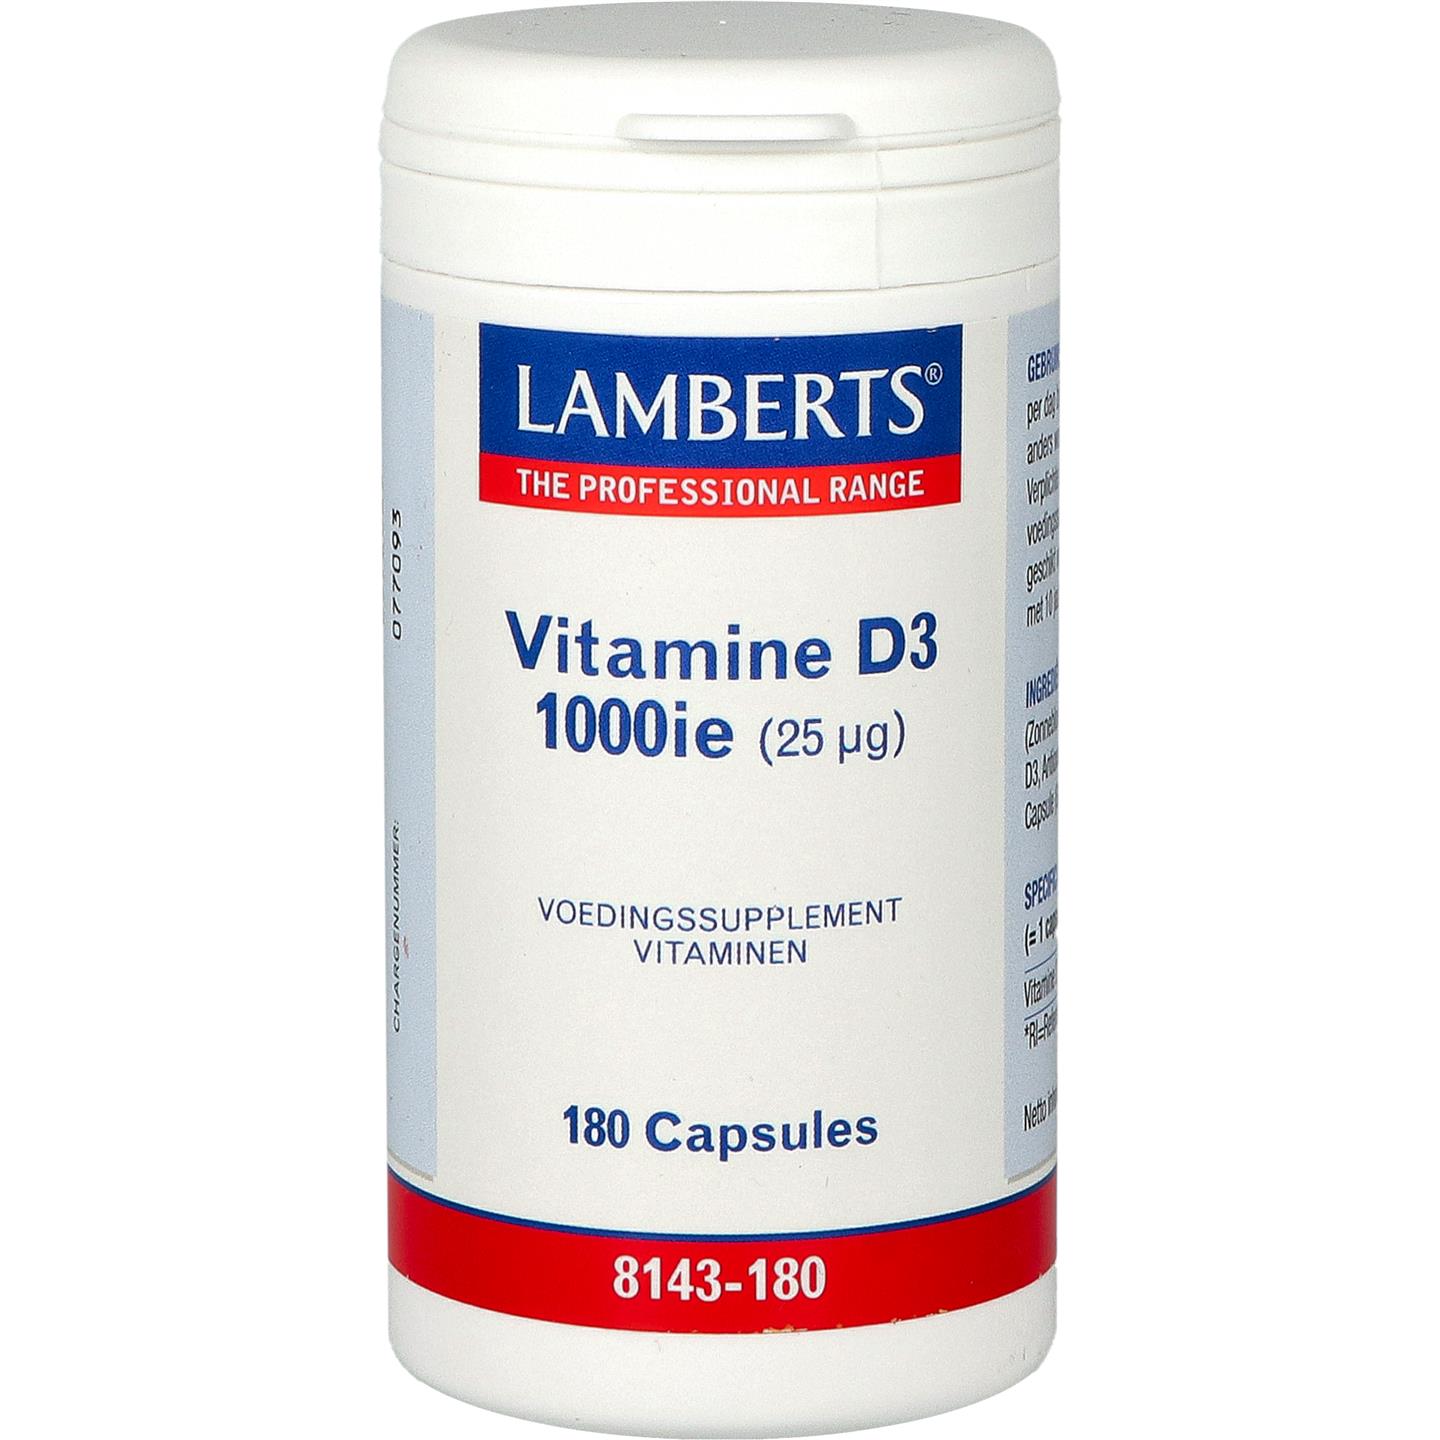 Vitamine D3 1000 IE (25 mcg)